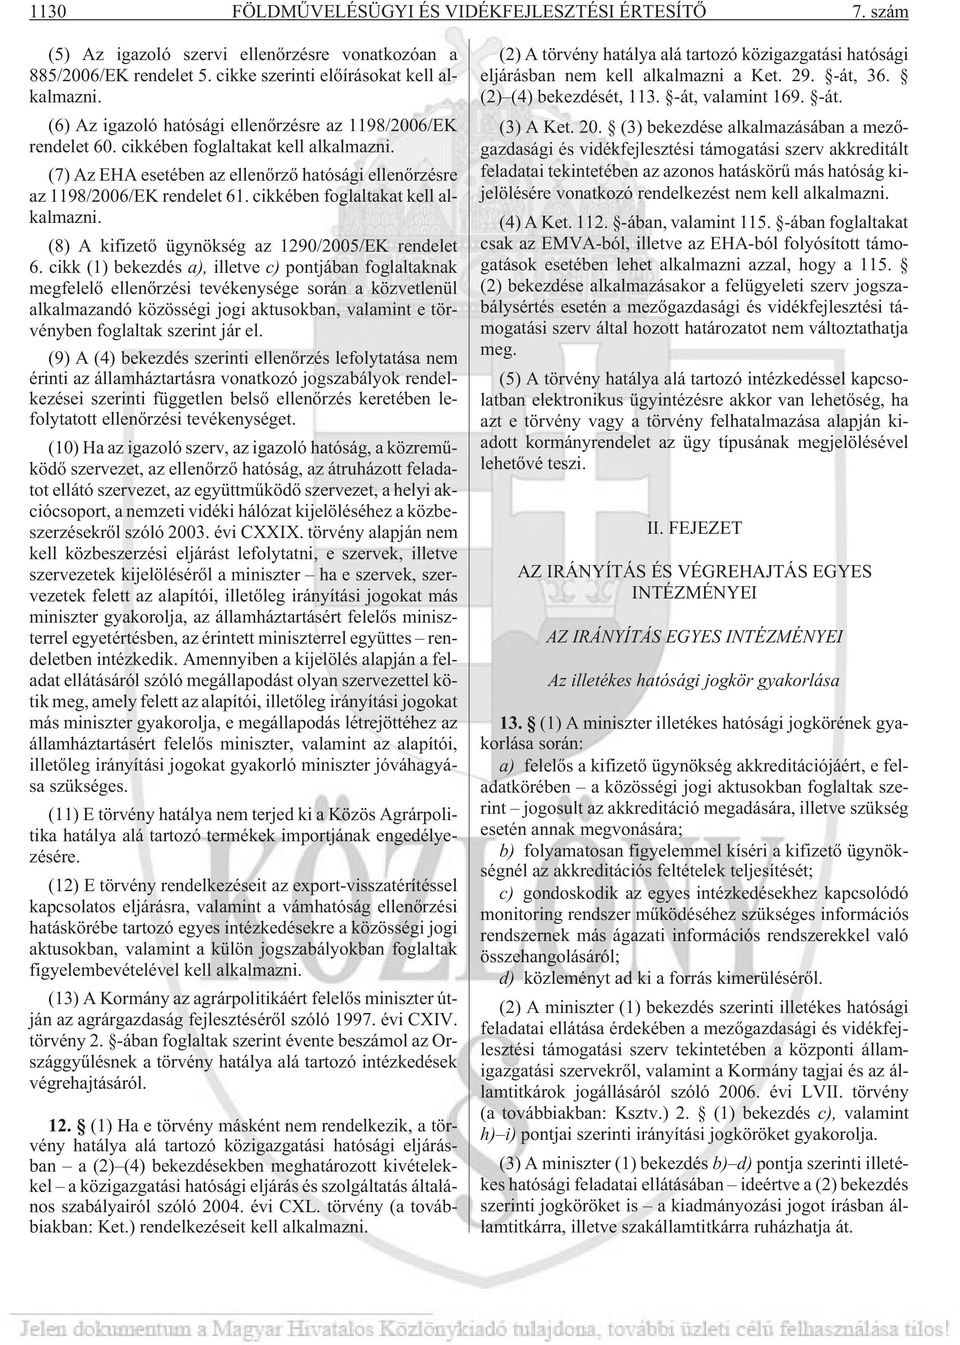 cikkében foglaltakat kell alkalmazni. (8) A kifizetõ ügynökség az 1290/2005/EK rendelet 6.